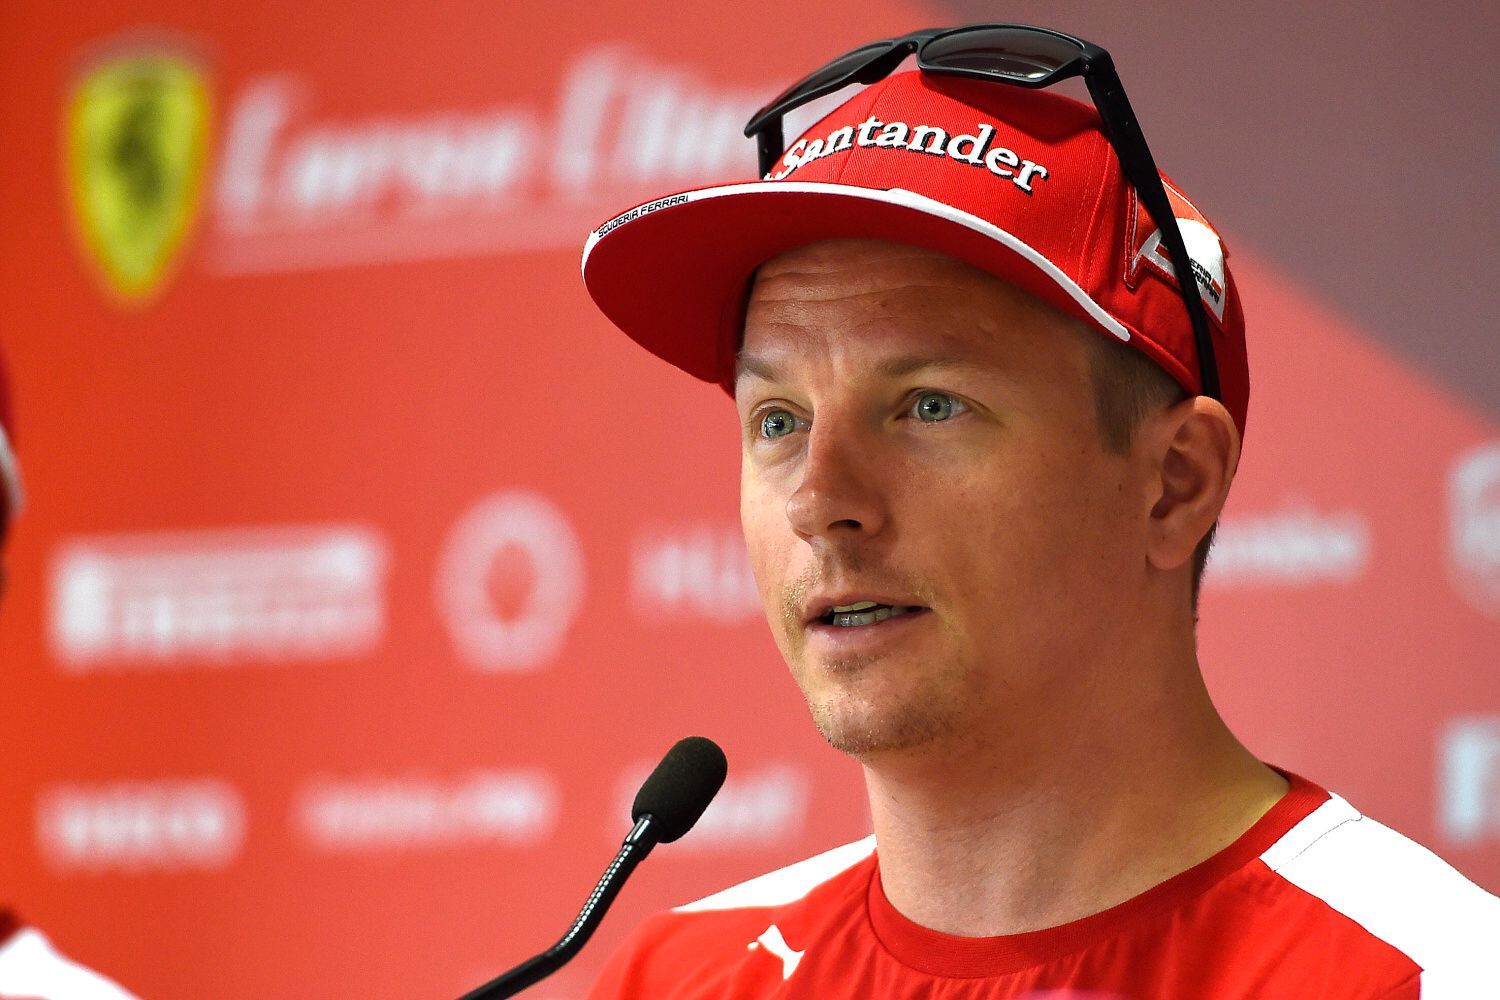 F1 2015: Kimi Räikkönen, Ferrari